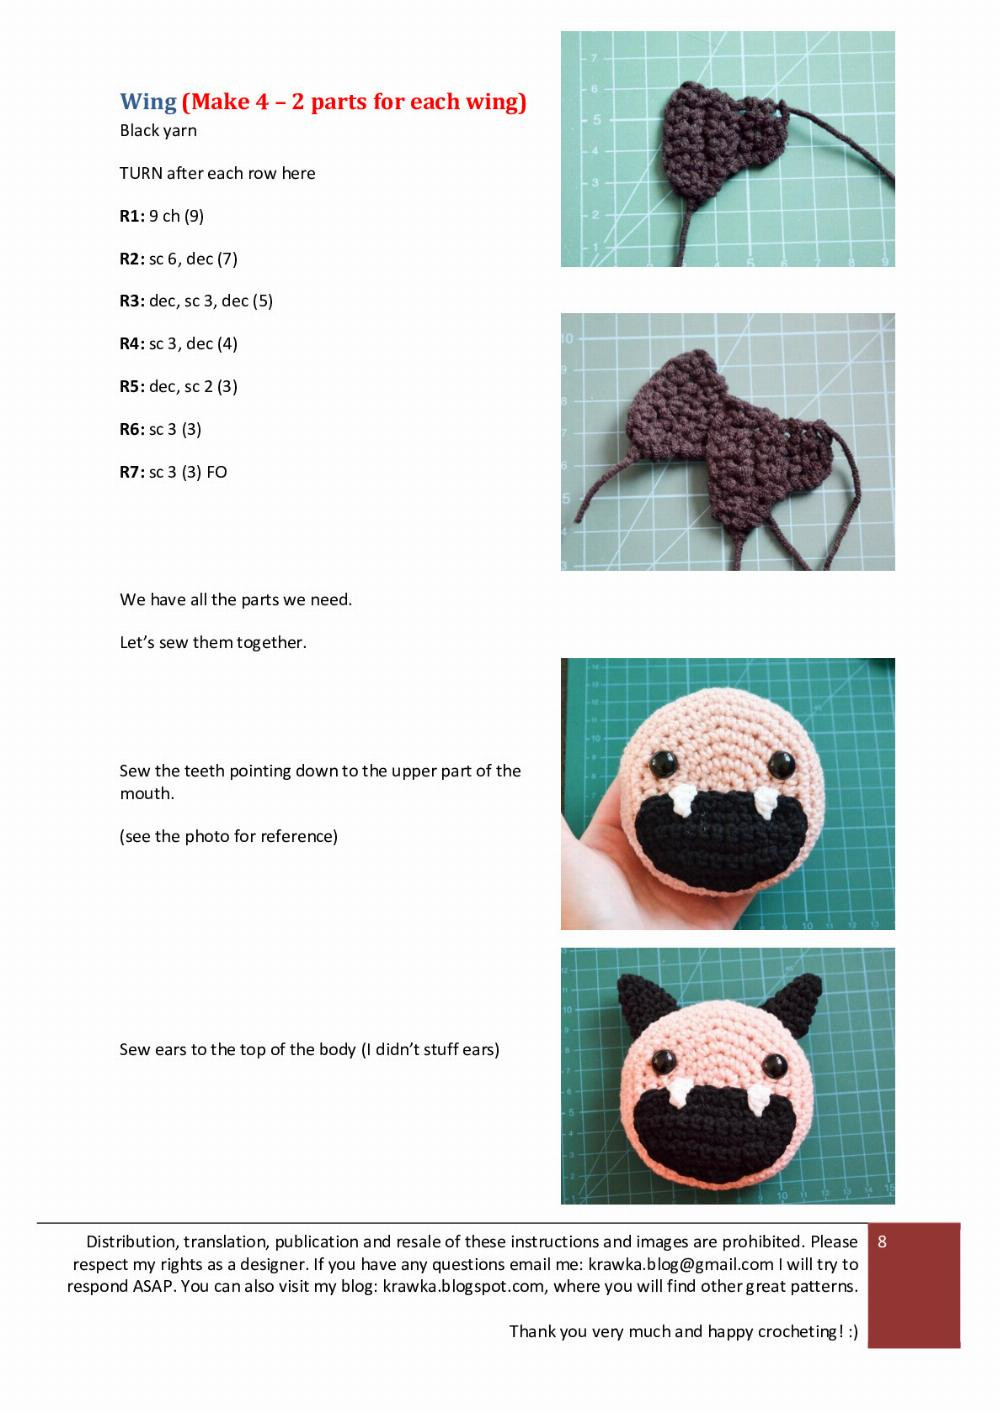 Halloween Bats Kamila crochet pattern